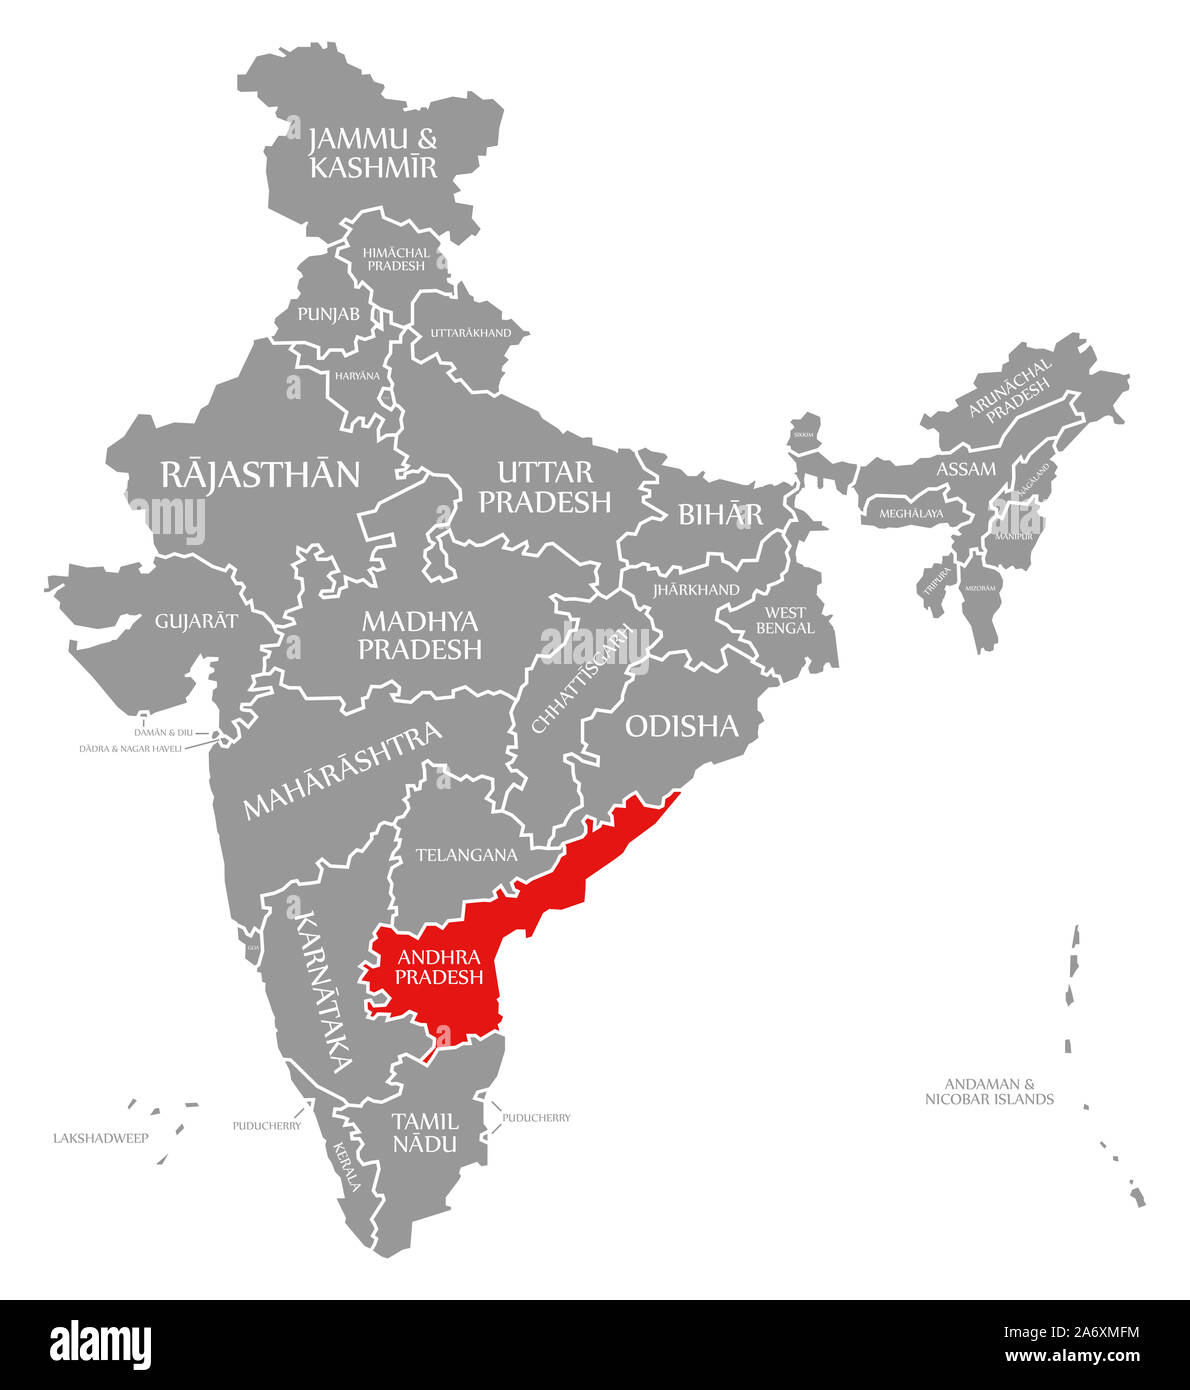 L'Andhra Pradesh en surbrillance rouge dans la carte de l'Inde Banque D'Images